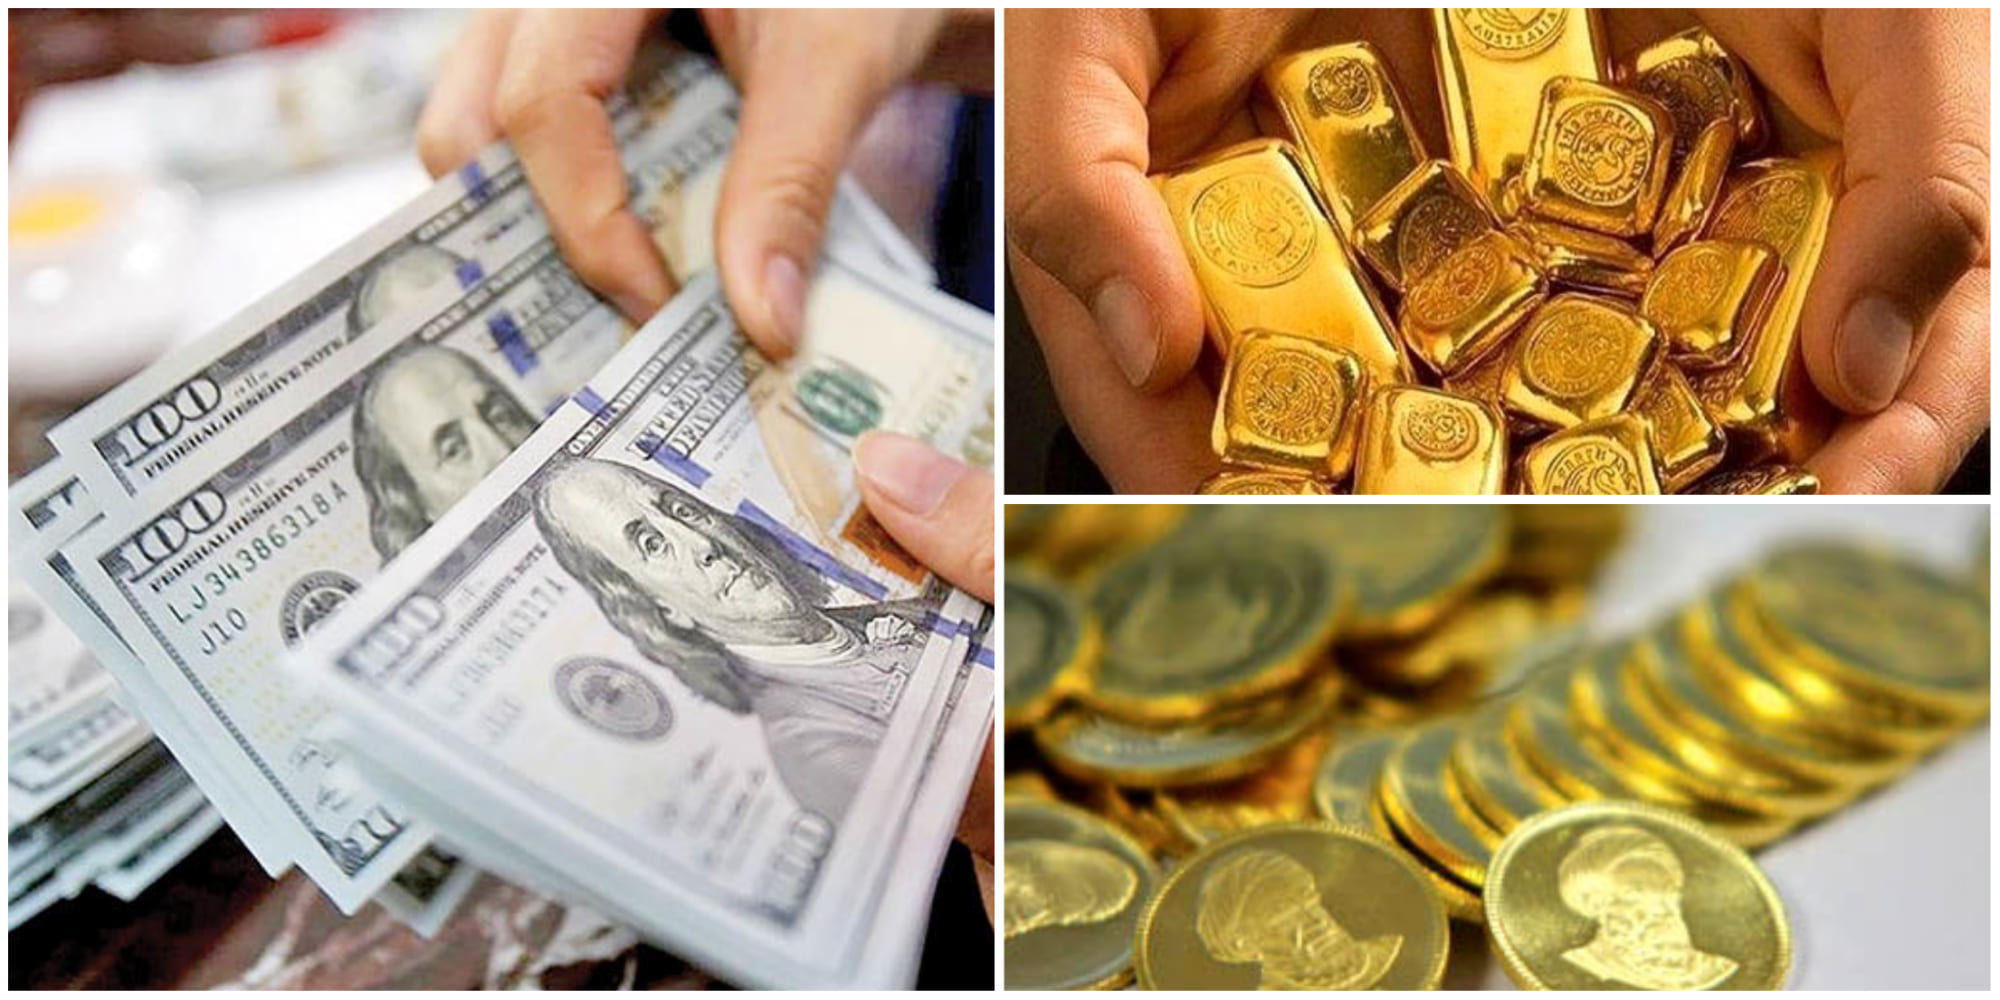  حال و هوای بازار ارز و طلا /اولین سیگنال افزایشی به قیمت دلار